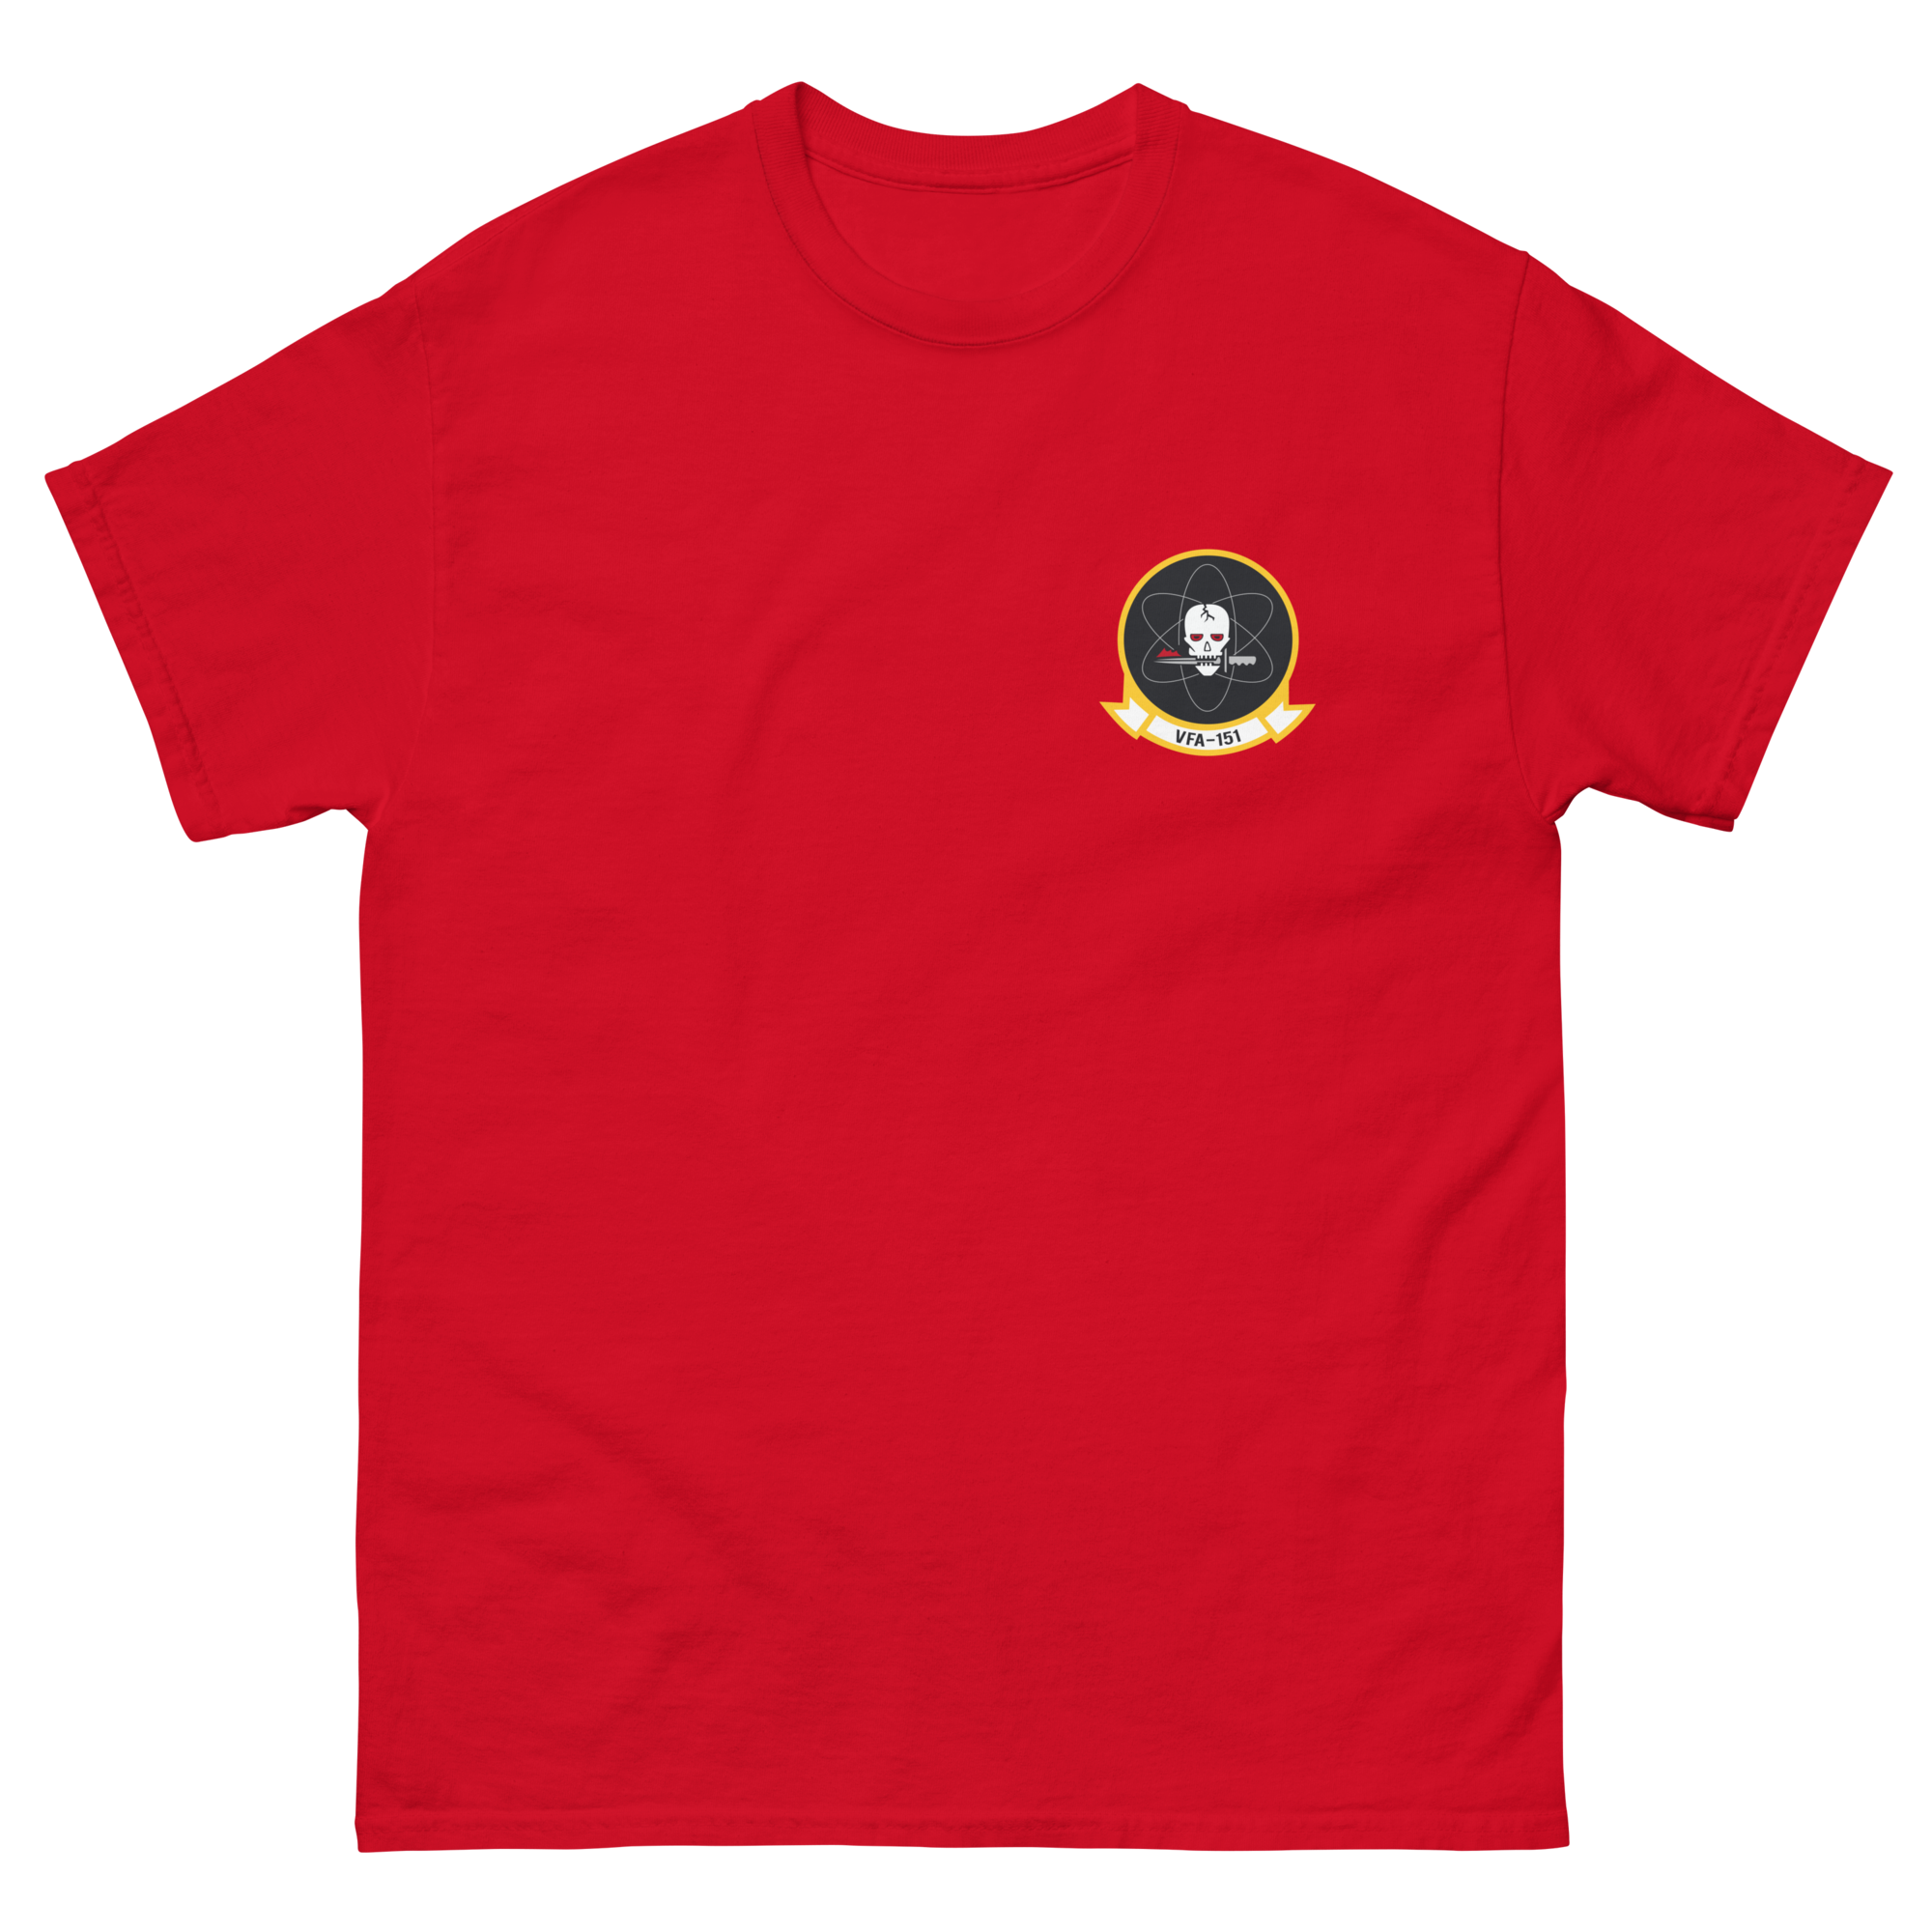 VFA-151 Vigilantes Squadron Crest T-Shirt